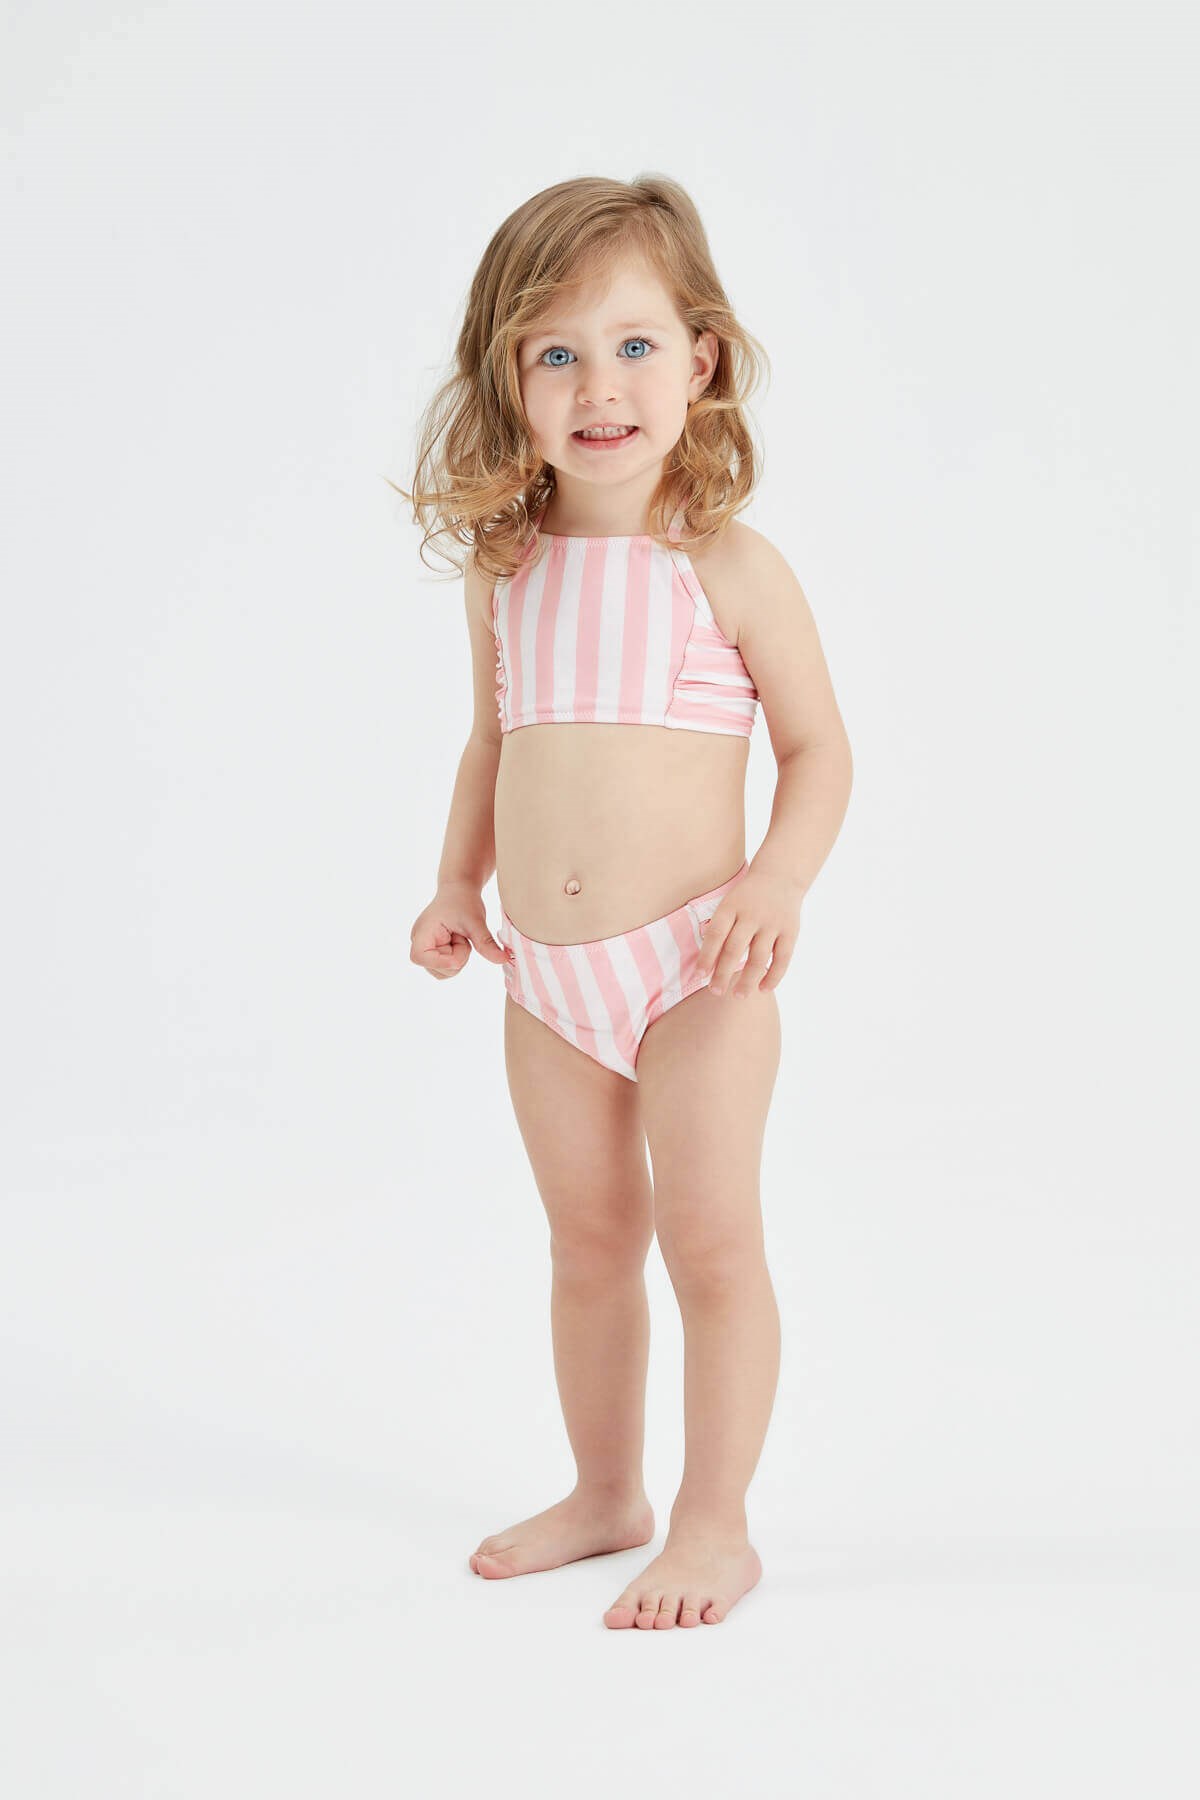 Lorine - Pembe çizgili çocuk bikini